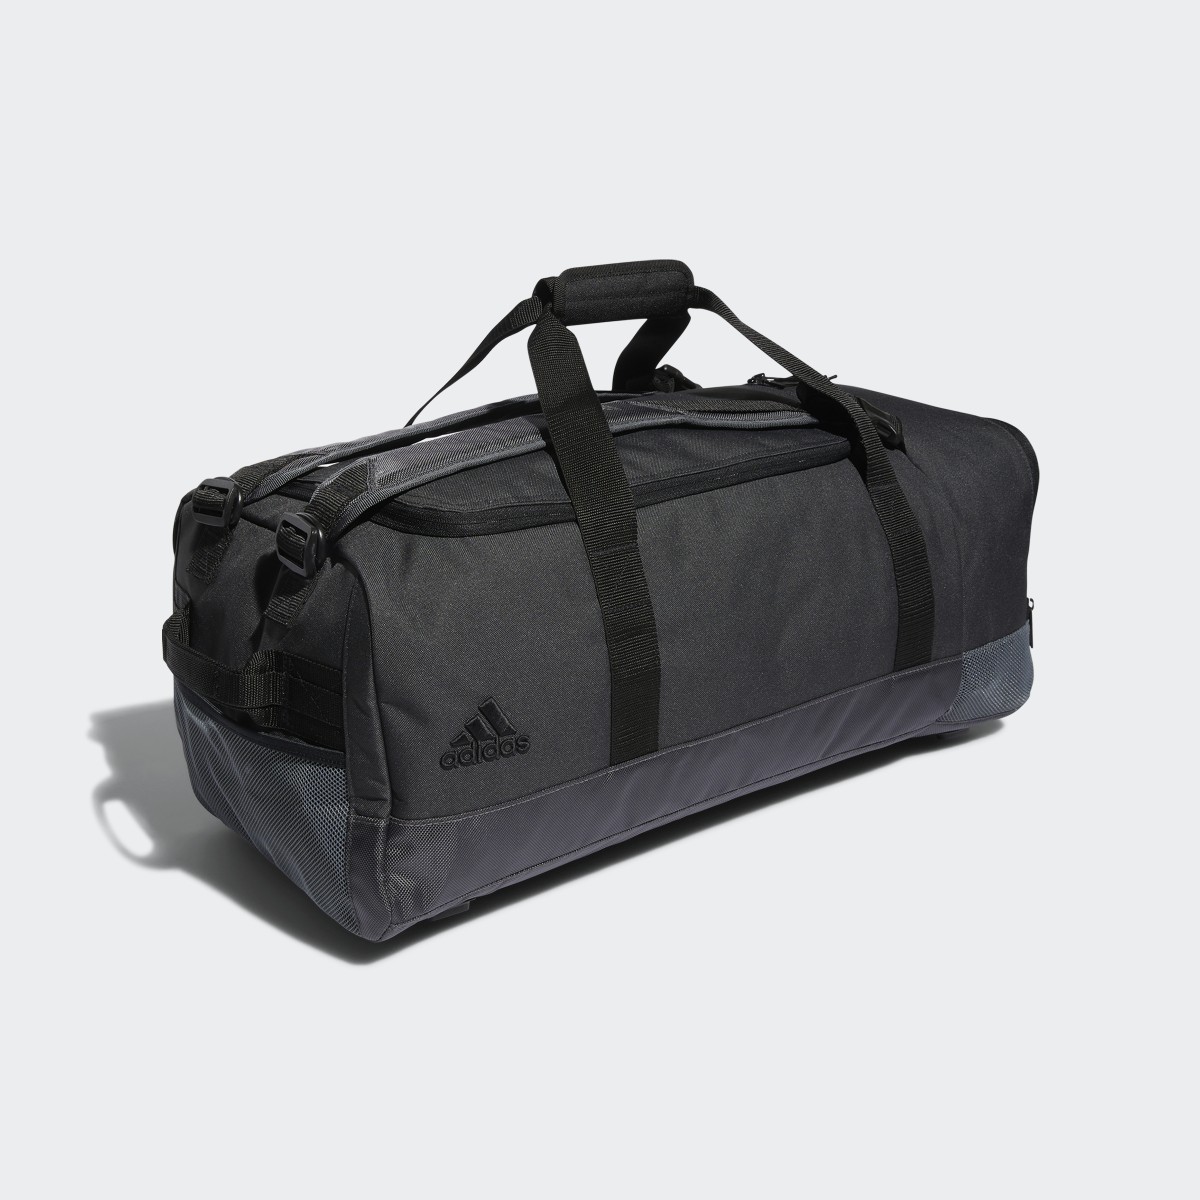 Adidas Golf Duffle Bag. 4